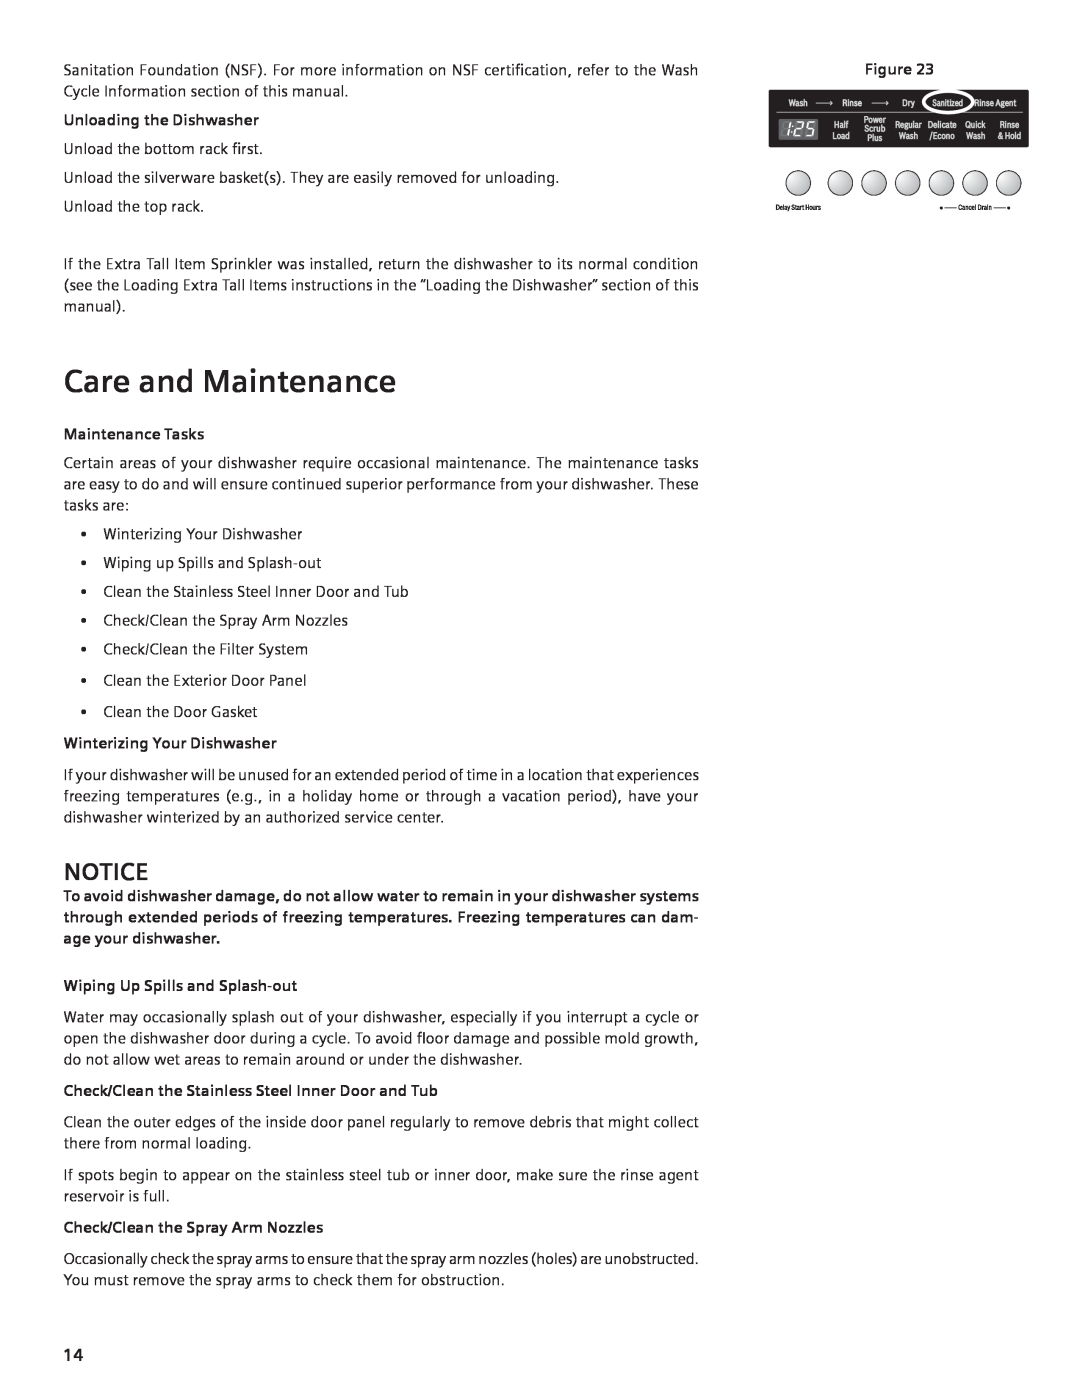 Compaq SHE55C manual Care and Maintenance, Unloading the Dishwasher, Maintenance Tasks, Winterizing Your Dishwasher 